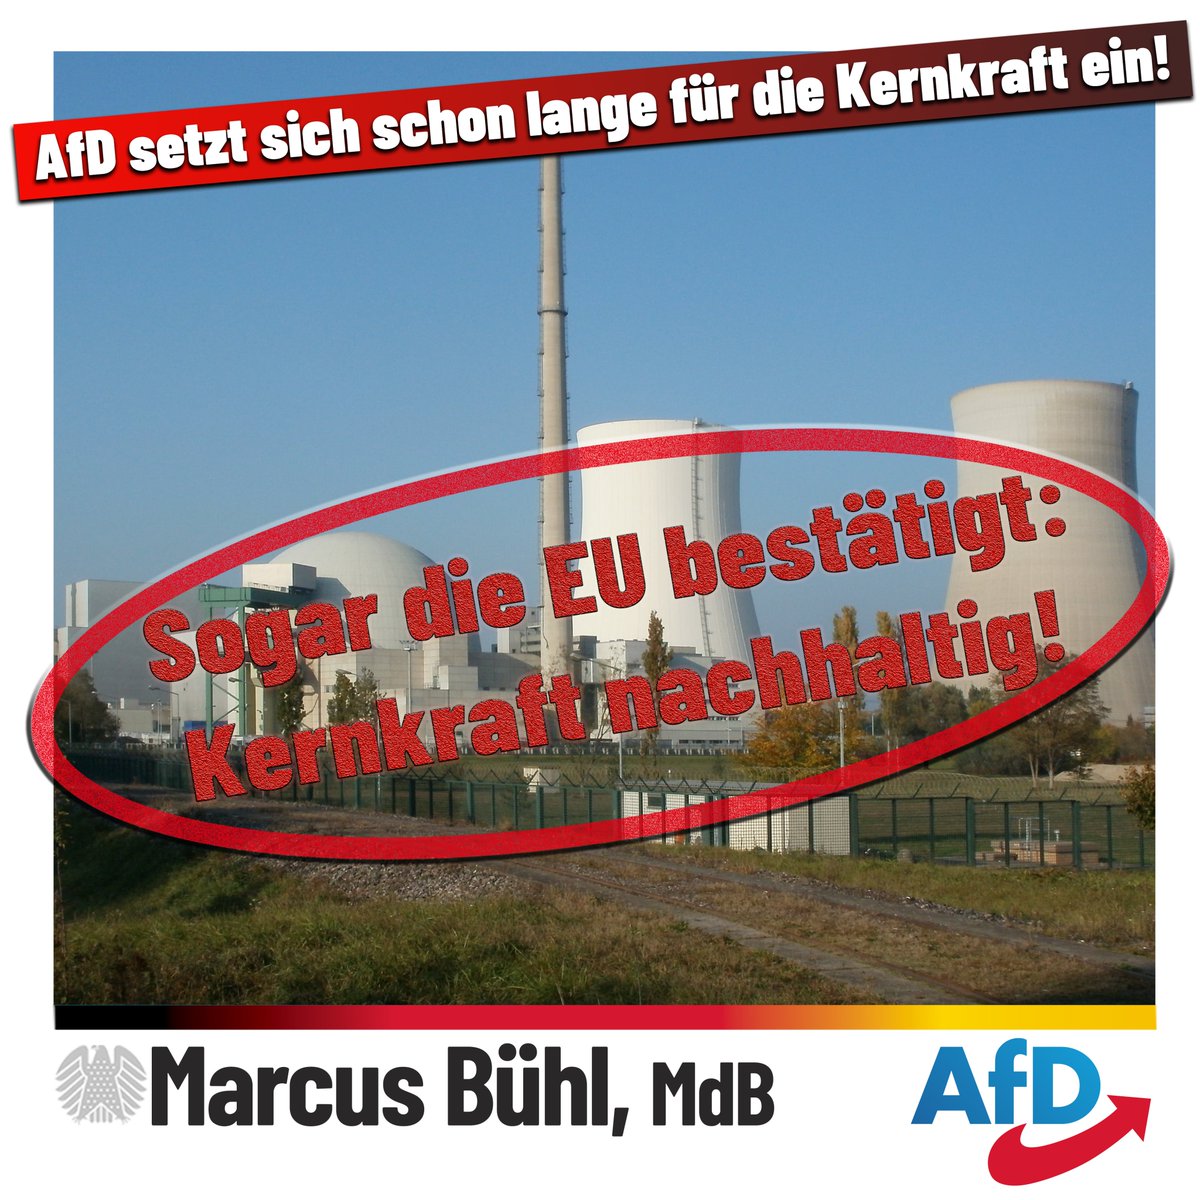 Erneut klare Ansage gegen den fatalen #Fehlkurs der Scholz- & Merkelregierung: #Kernkraft ist #nachhaltig! 

Wir fordern: Laufzeit in #Betrieb befindlicher Kernkraftwerke #verlängern, stillgelegte Kernkraftwerke wieder in Betrieb nehmen!

#BezahlbareEnergie #BürgerEntlasten #AfD